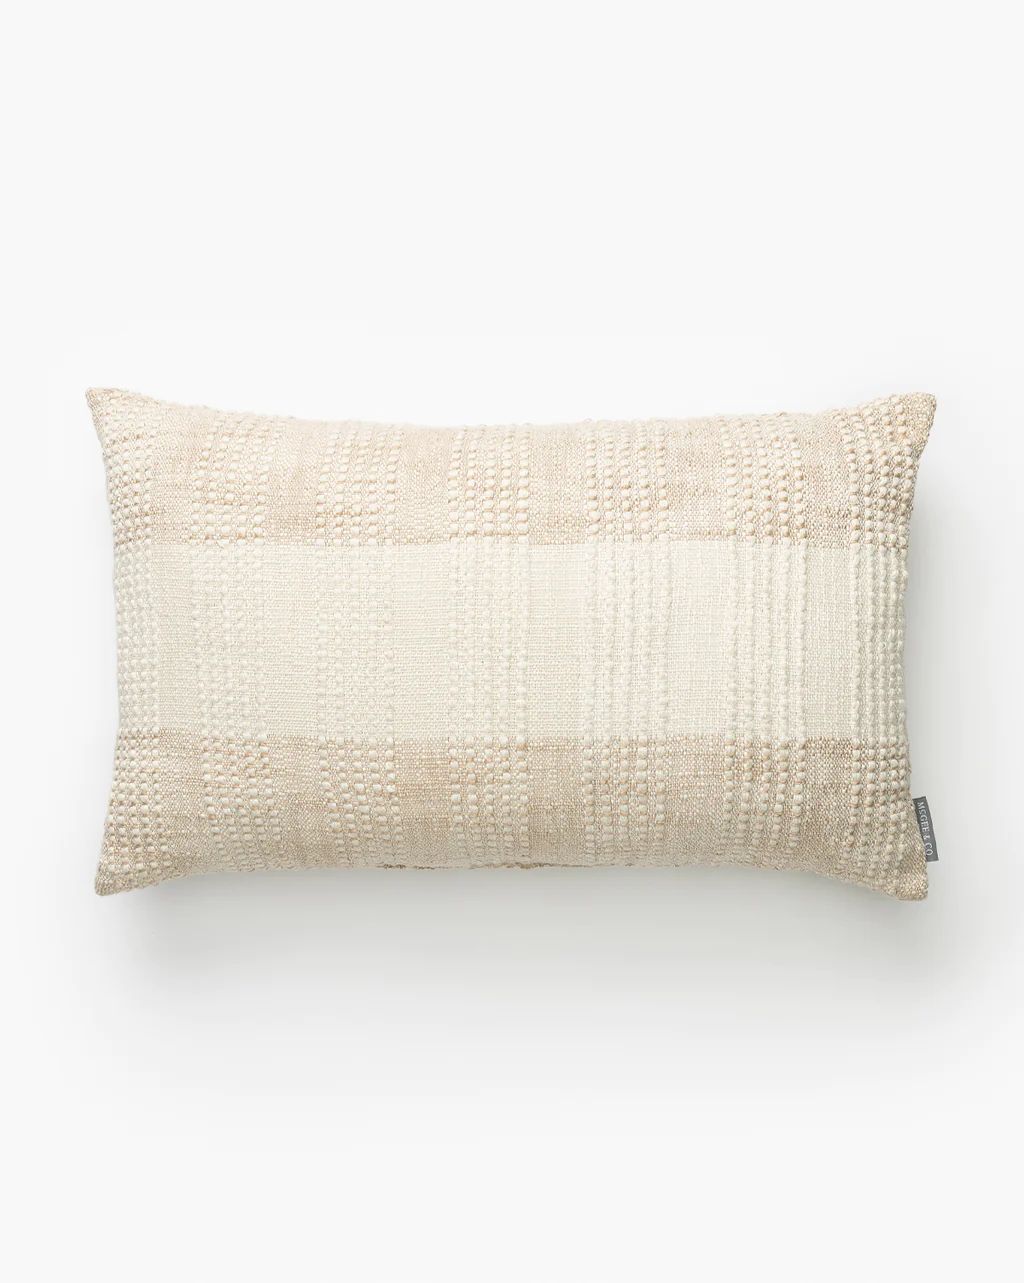 Muara Indoor/Outdoor Pillow | McGee & Co.